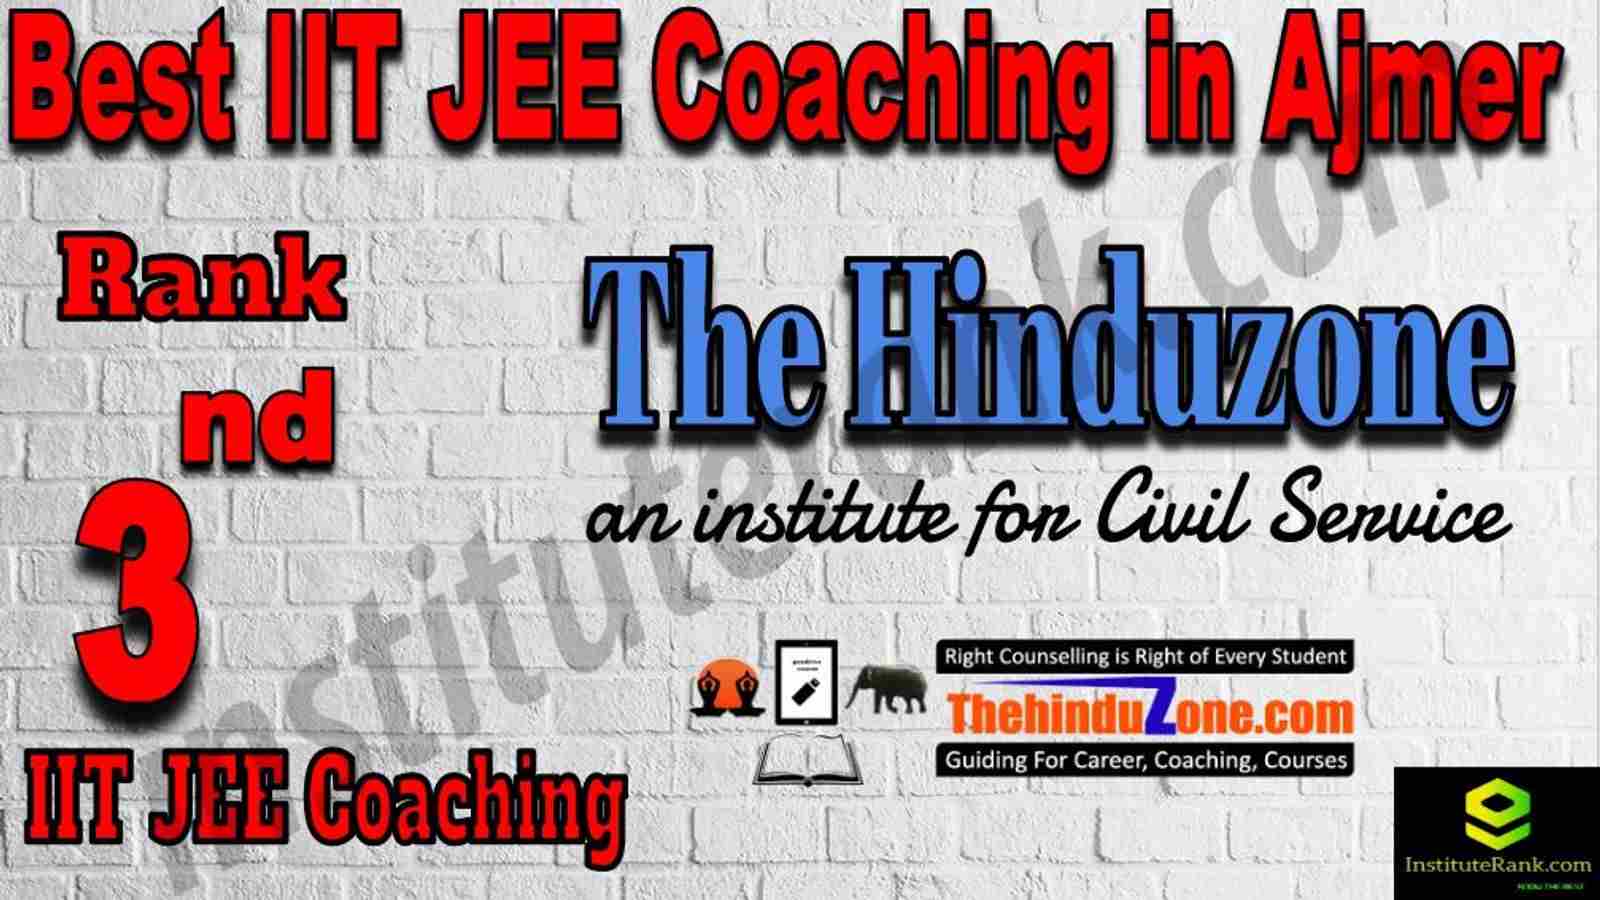 3rd Best IIT JEE Coaching in Ajmer